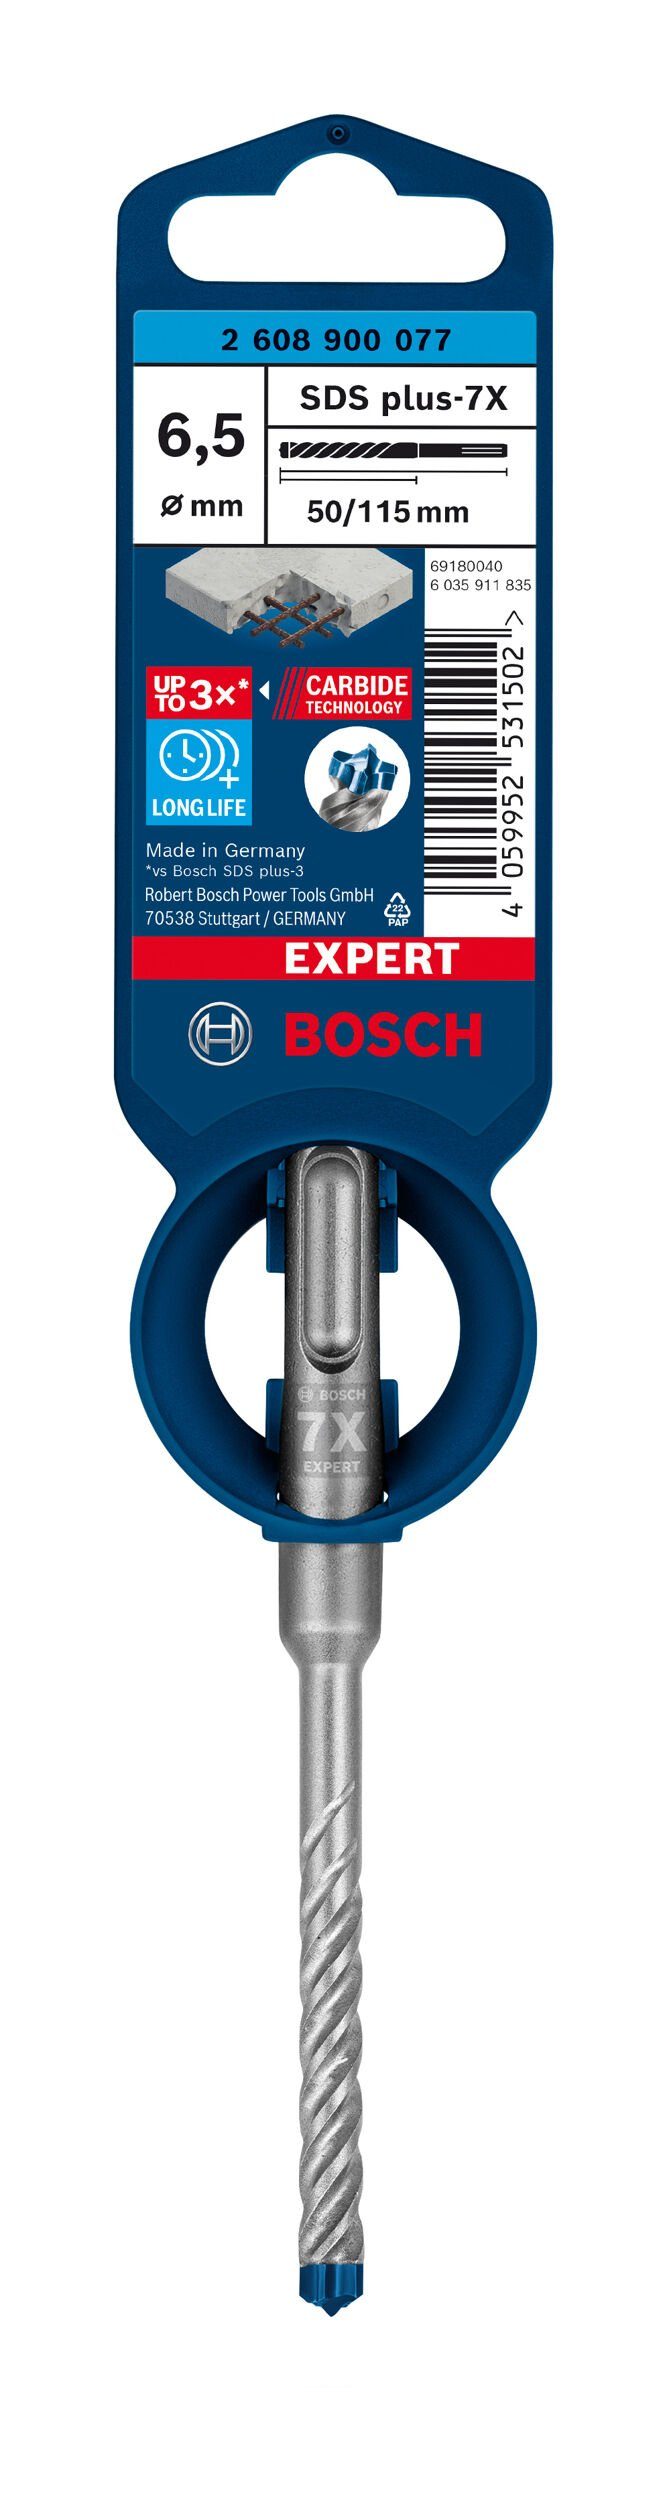 BOSCH Universalbohrer Expert mm x Hammerbohrer 115 x 6,5 1er-Pack - SDS - 50 plus-7X